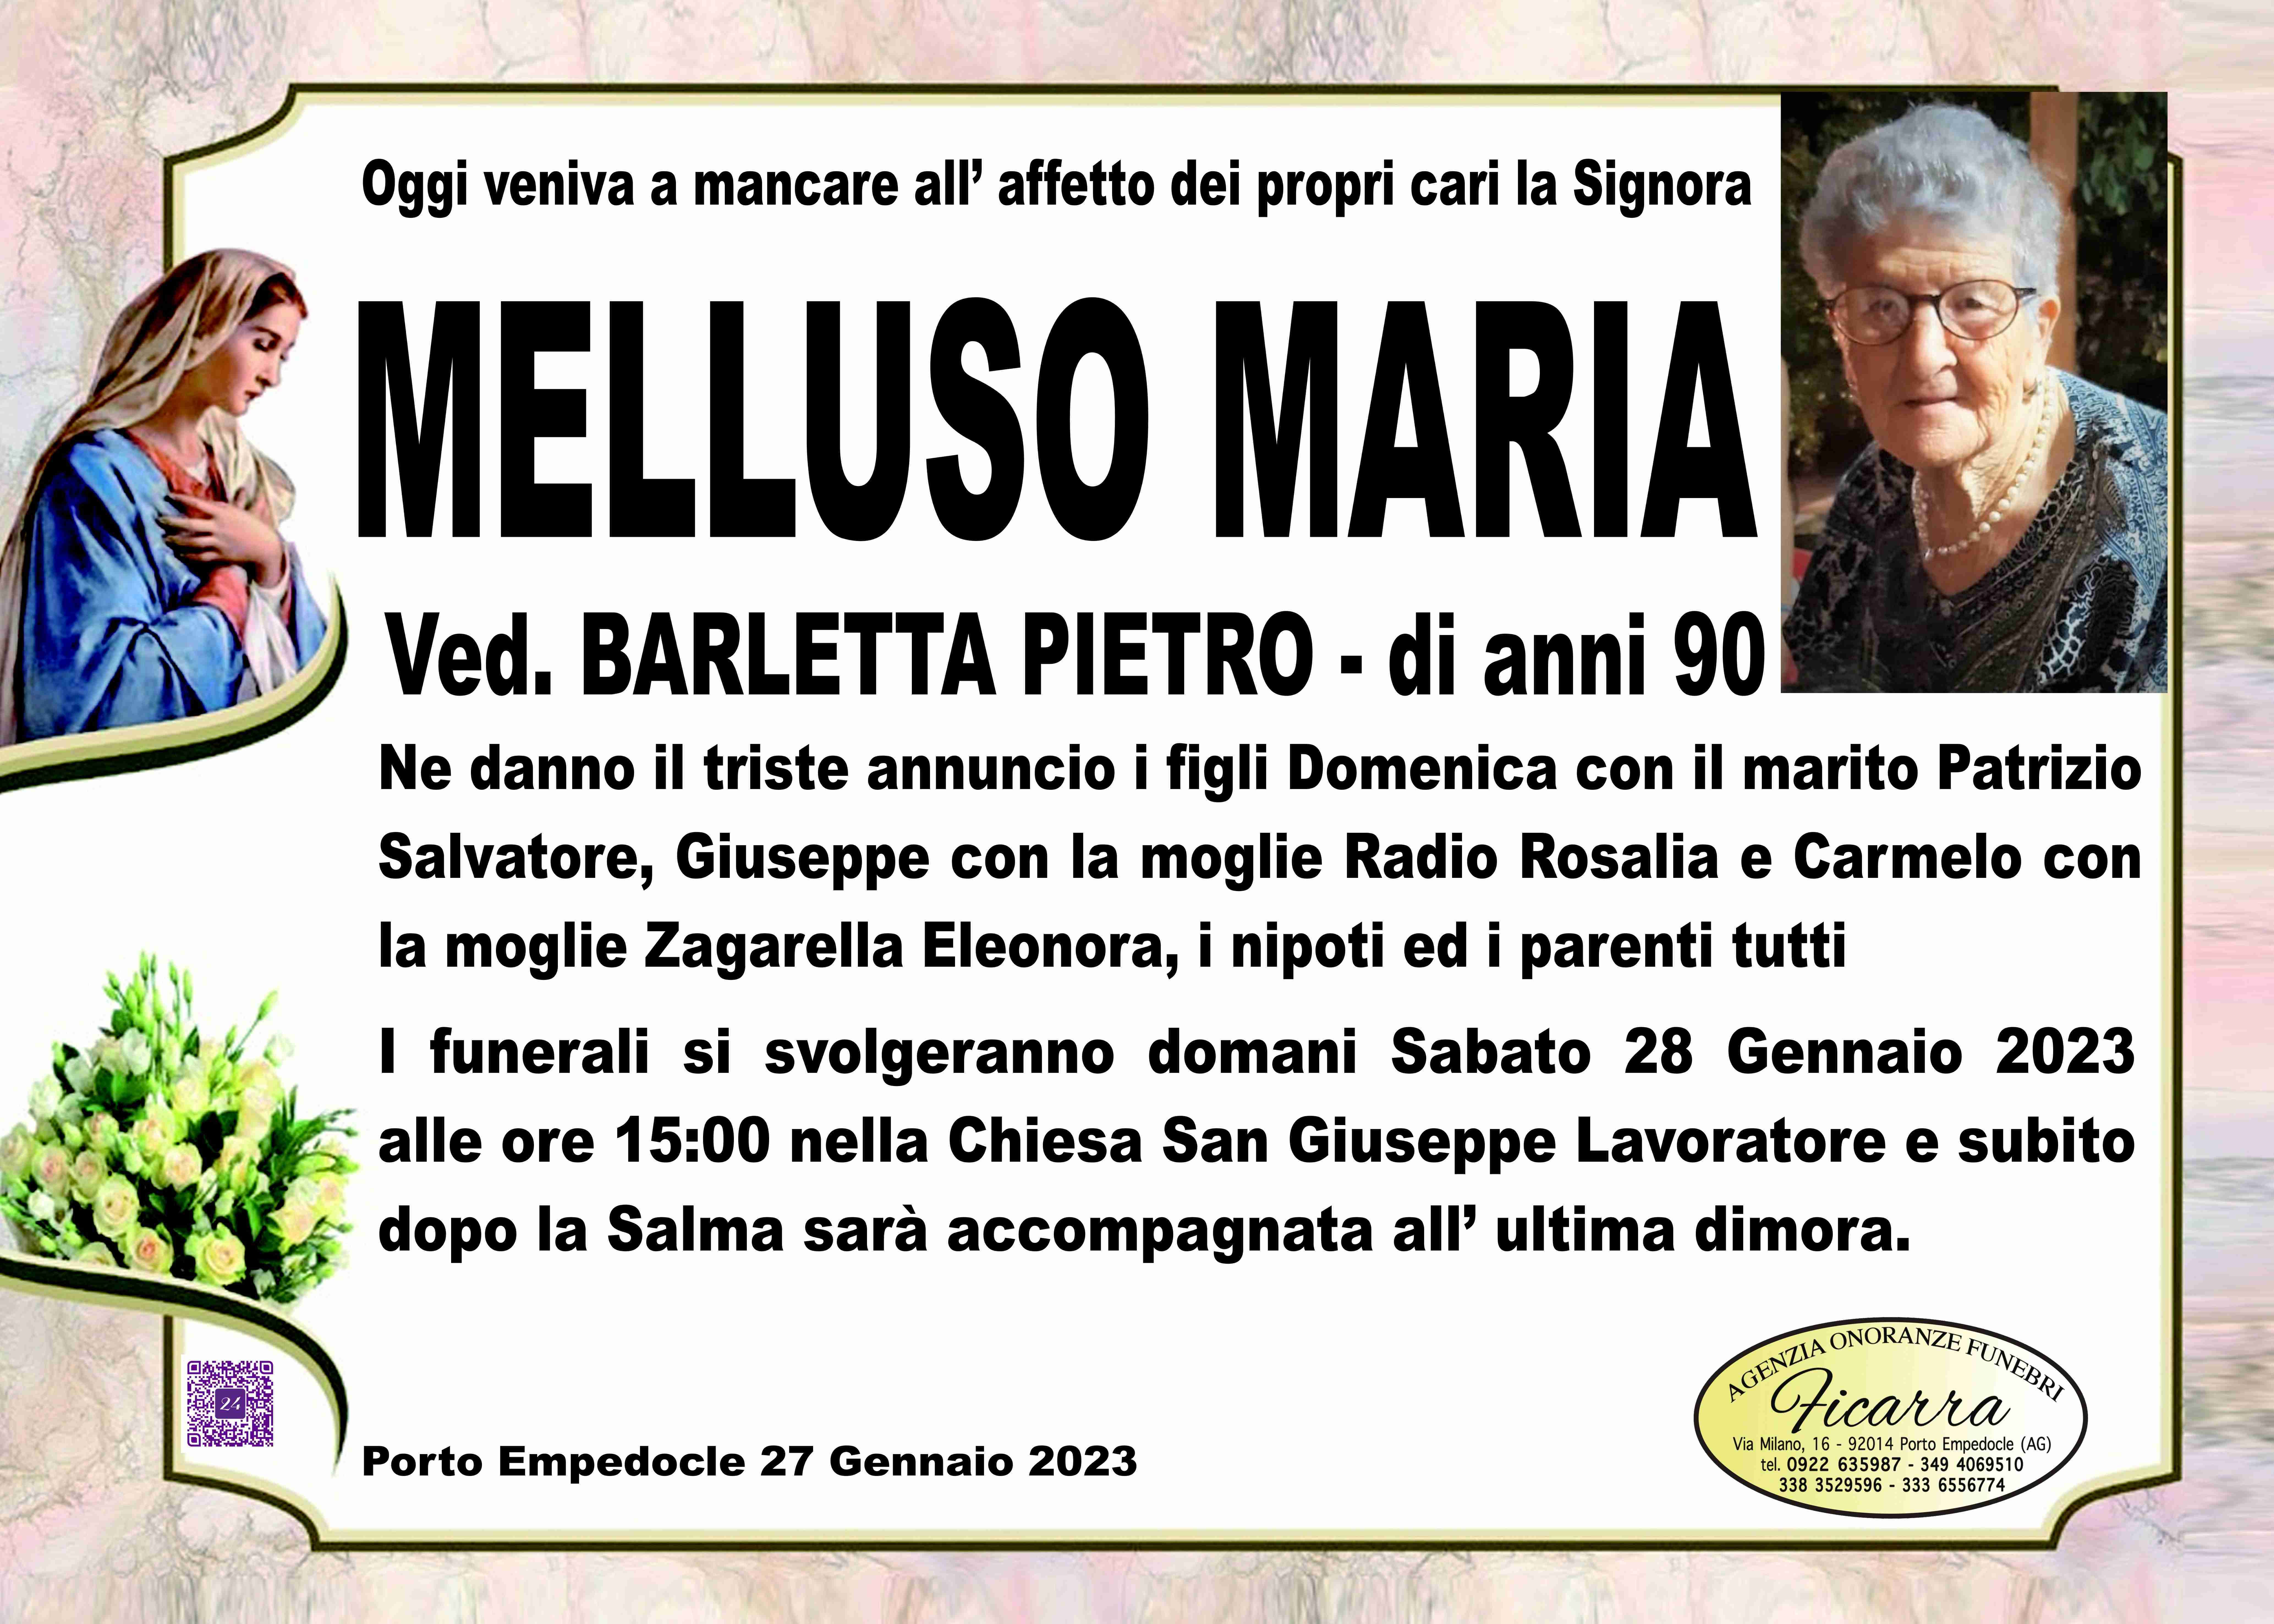 Maria Melluso